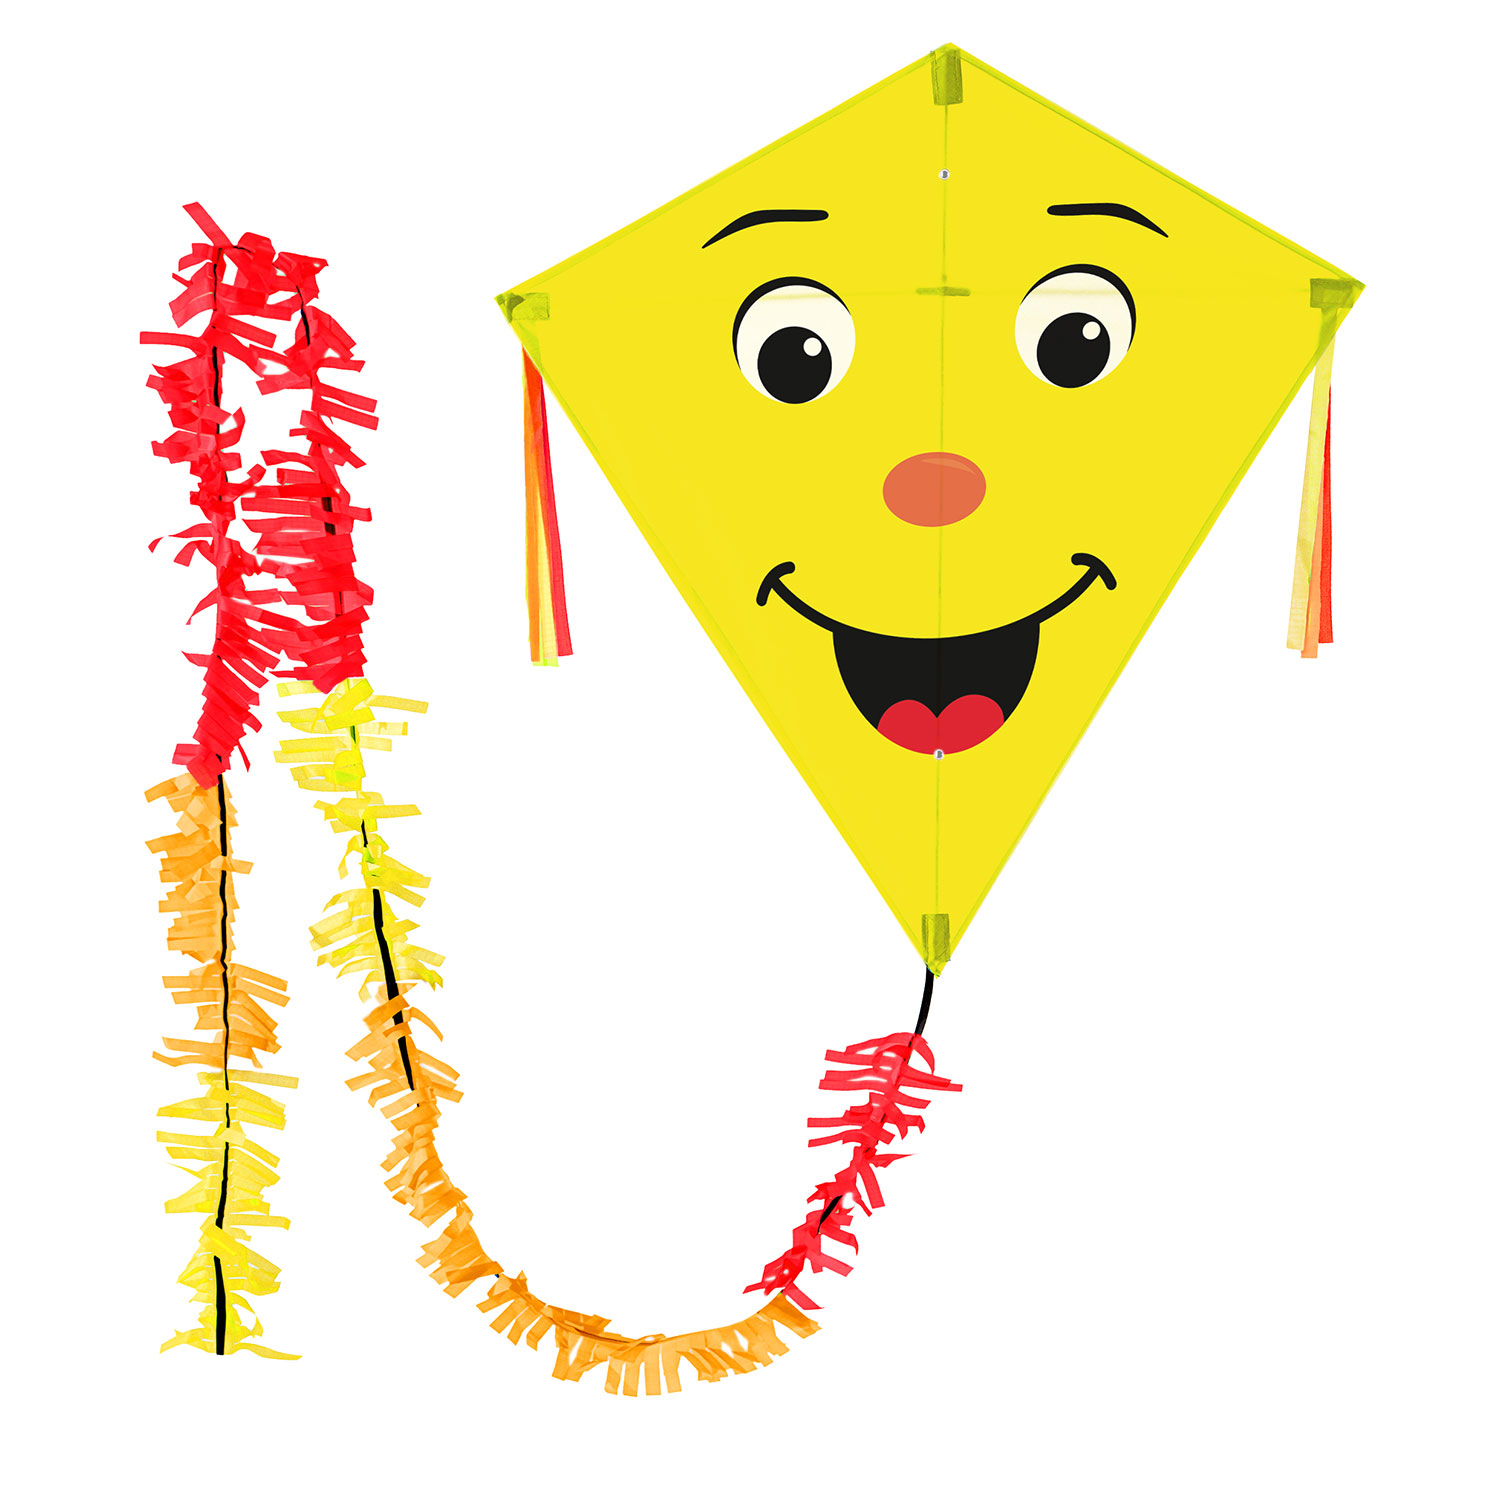 Gelber Rautendrachen für Kinder mit lachenden Gesicht kaufen!